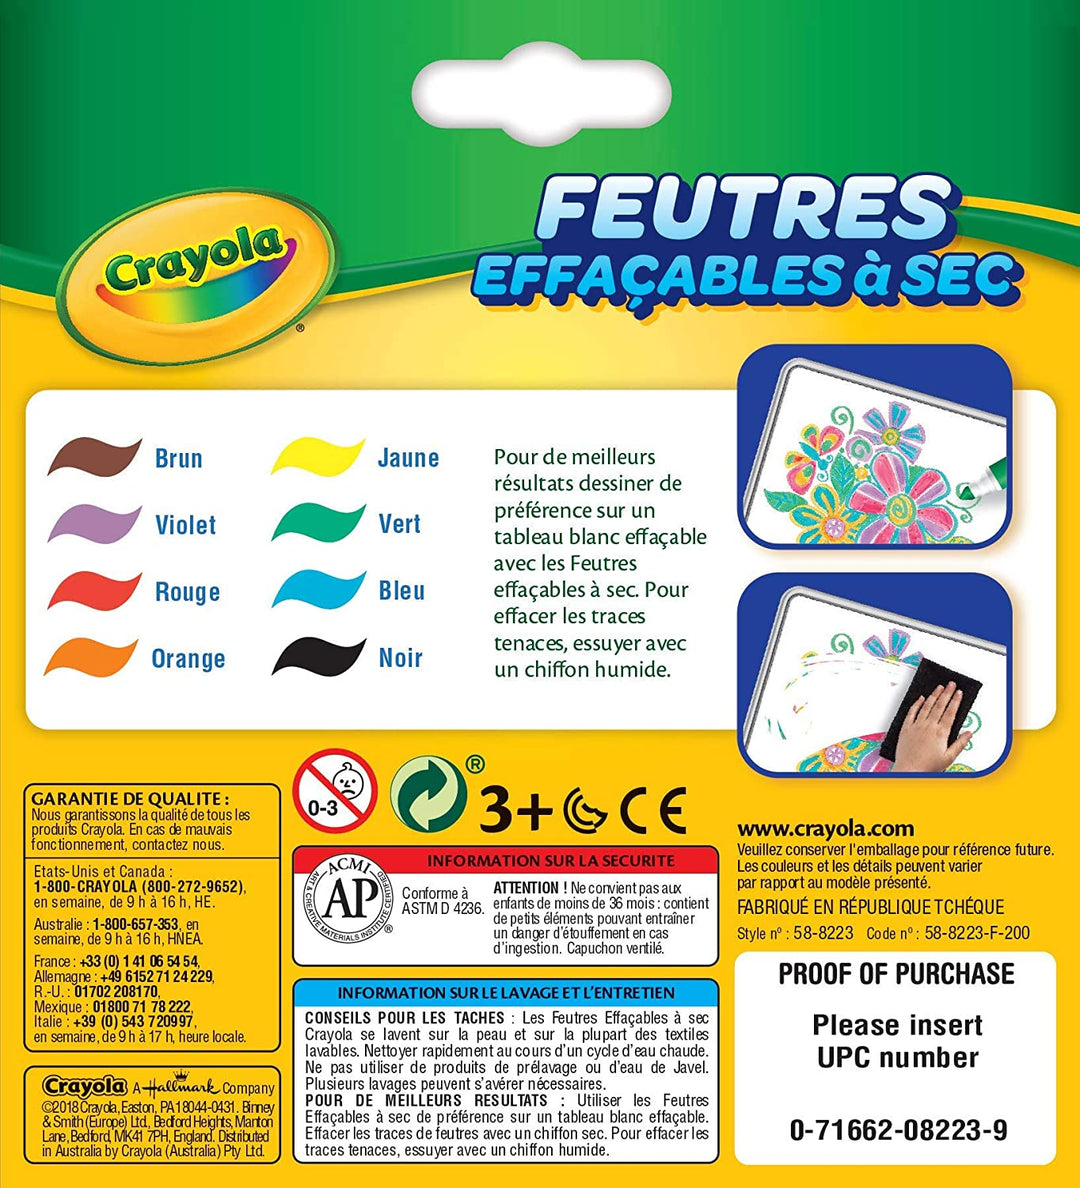 Crayola – 8 radierbare Filzstifte (große Spitze) – Französische Box – Kreative Hobbys – Filzstifte und ausgefallene Accessoires – Für Kinder ab 3 Jahren – Zeichen- und Malspiel